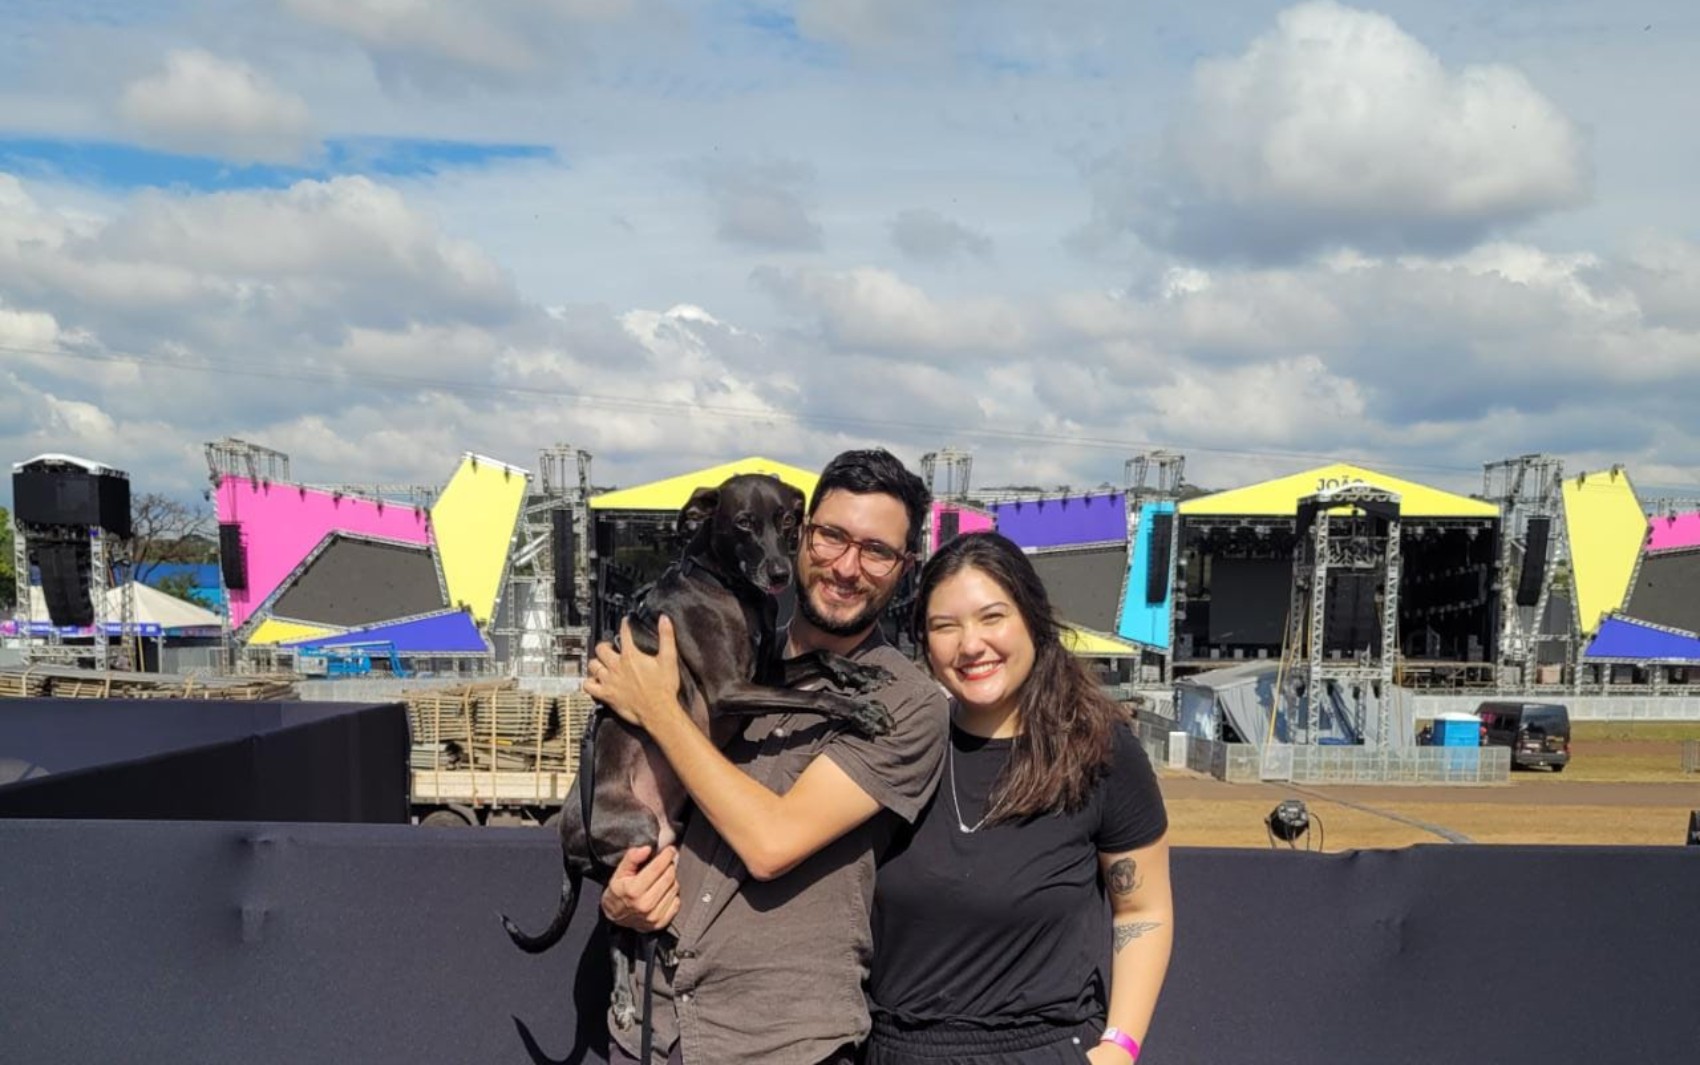 Casal que adotou cachorro no João Rock em 2019 volta a Ribeirão com pet: 'Mudou nossas vidas' 